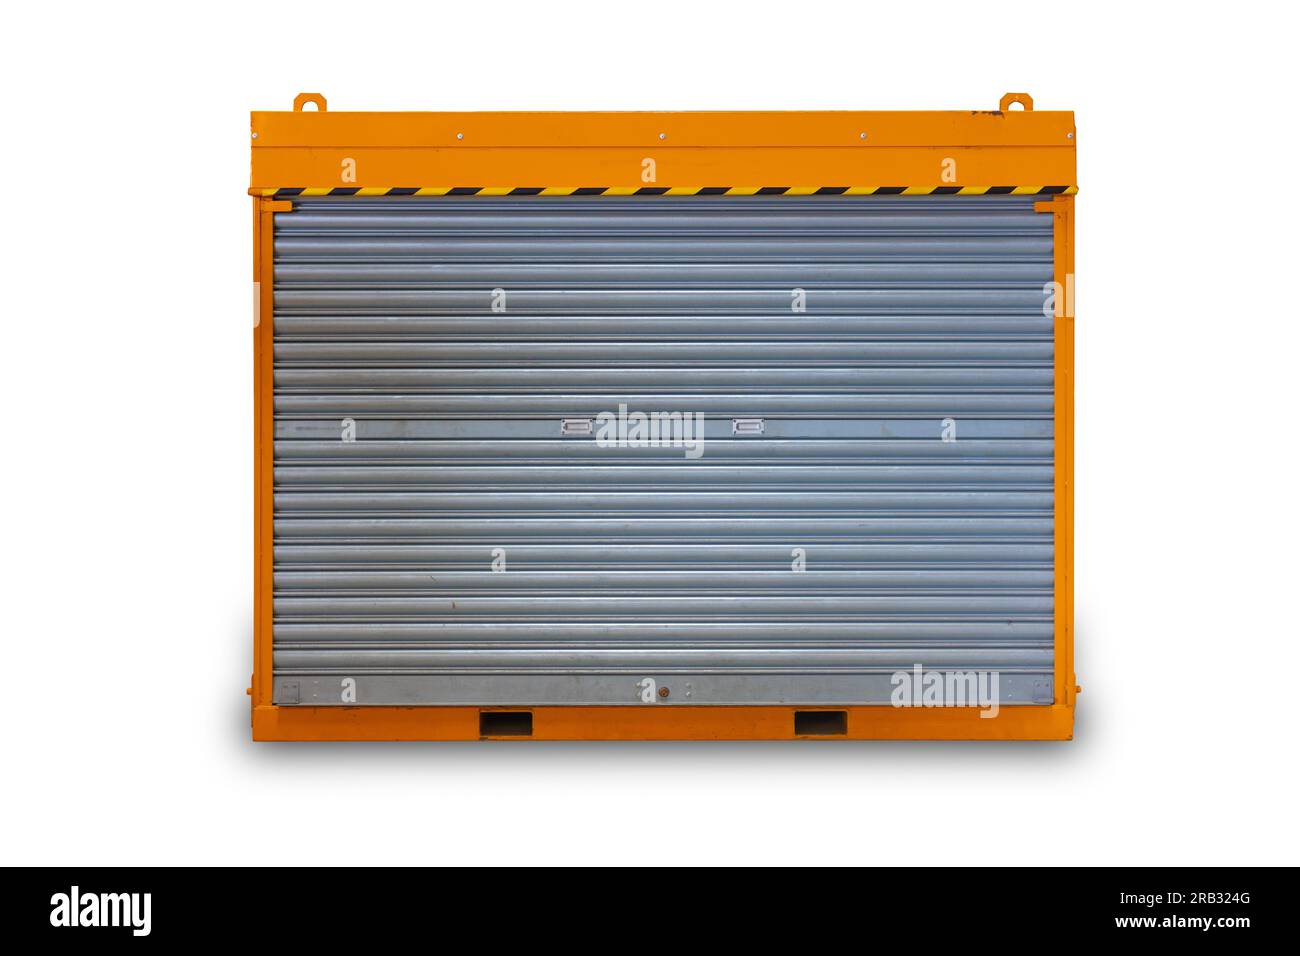 Industrieausrüstung Werkzeugschrank Aufbewahrungsfach Rollladentür isoliert auf weißem Hintergrund Stockfoto